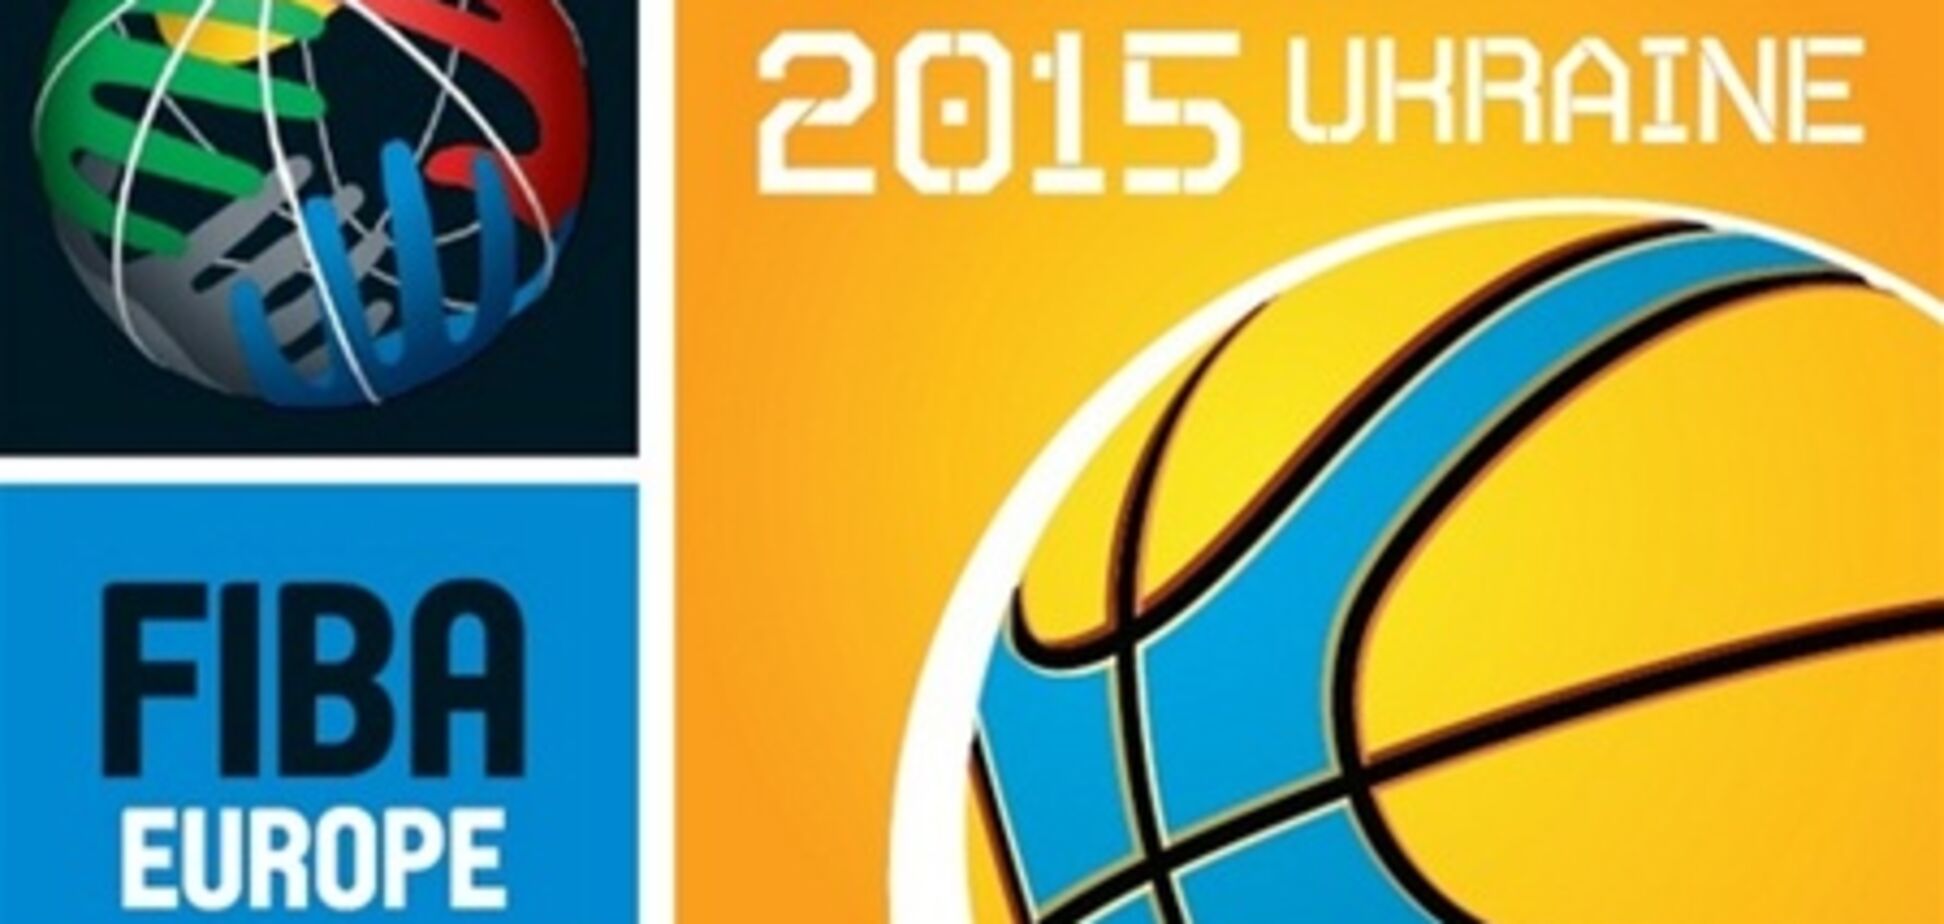 Евробаскет-2015 состоится в Украине